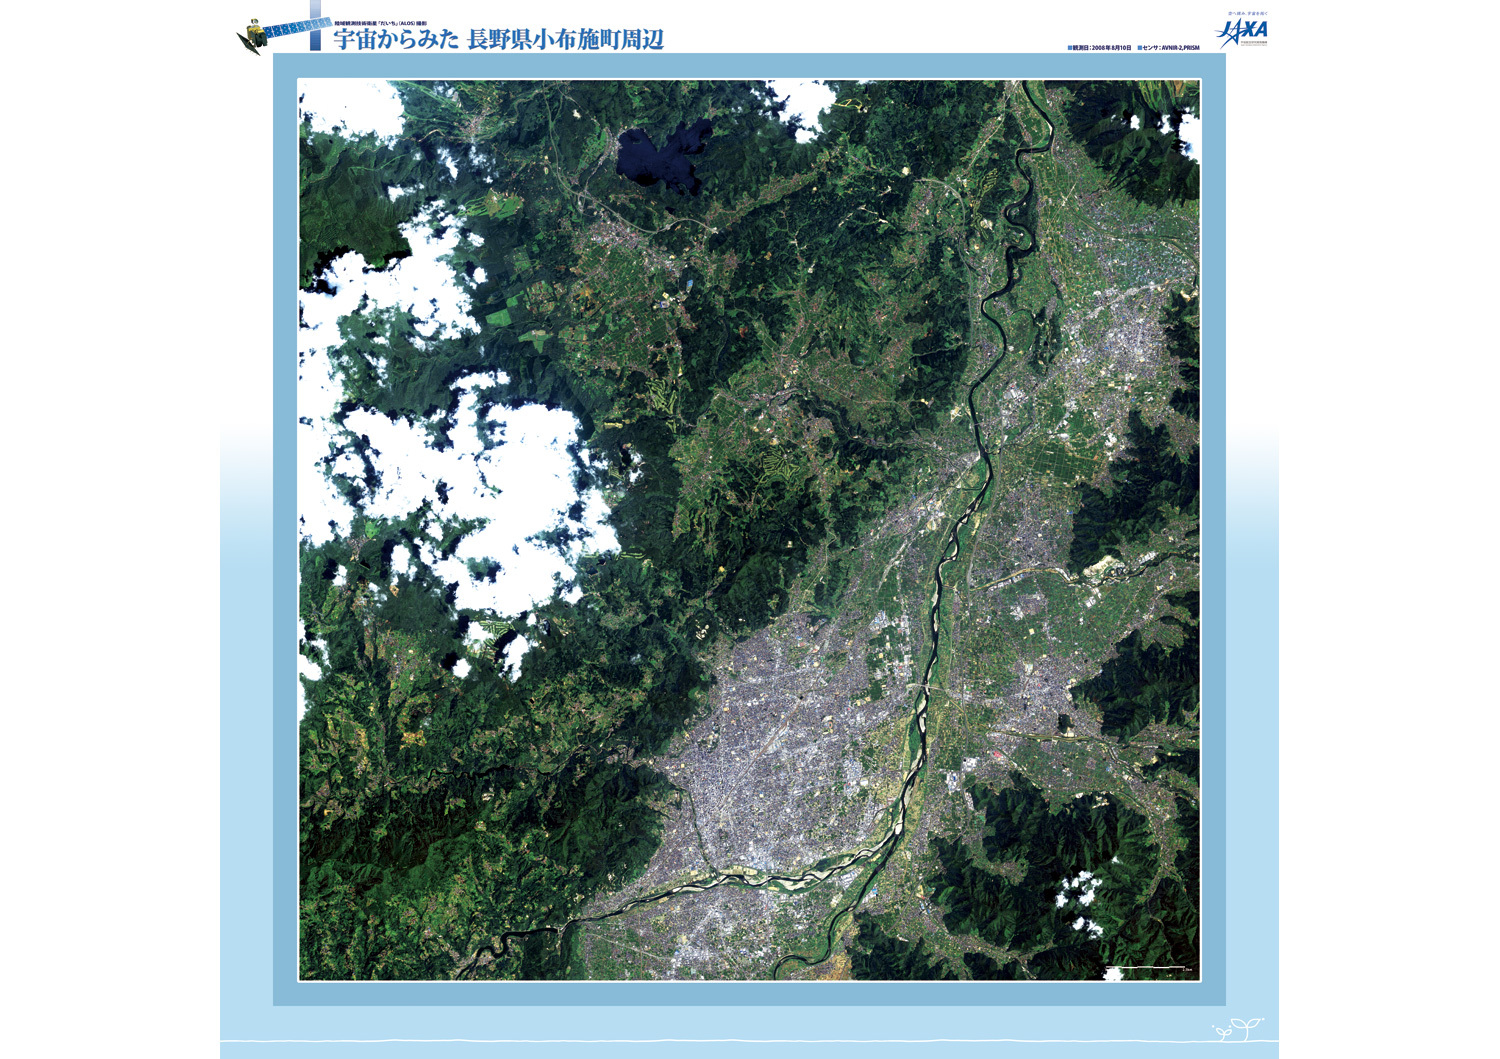 だいちから見た日本の都市 小布施町周辺:衛星画像（ポスター仕上げ）